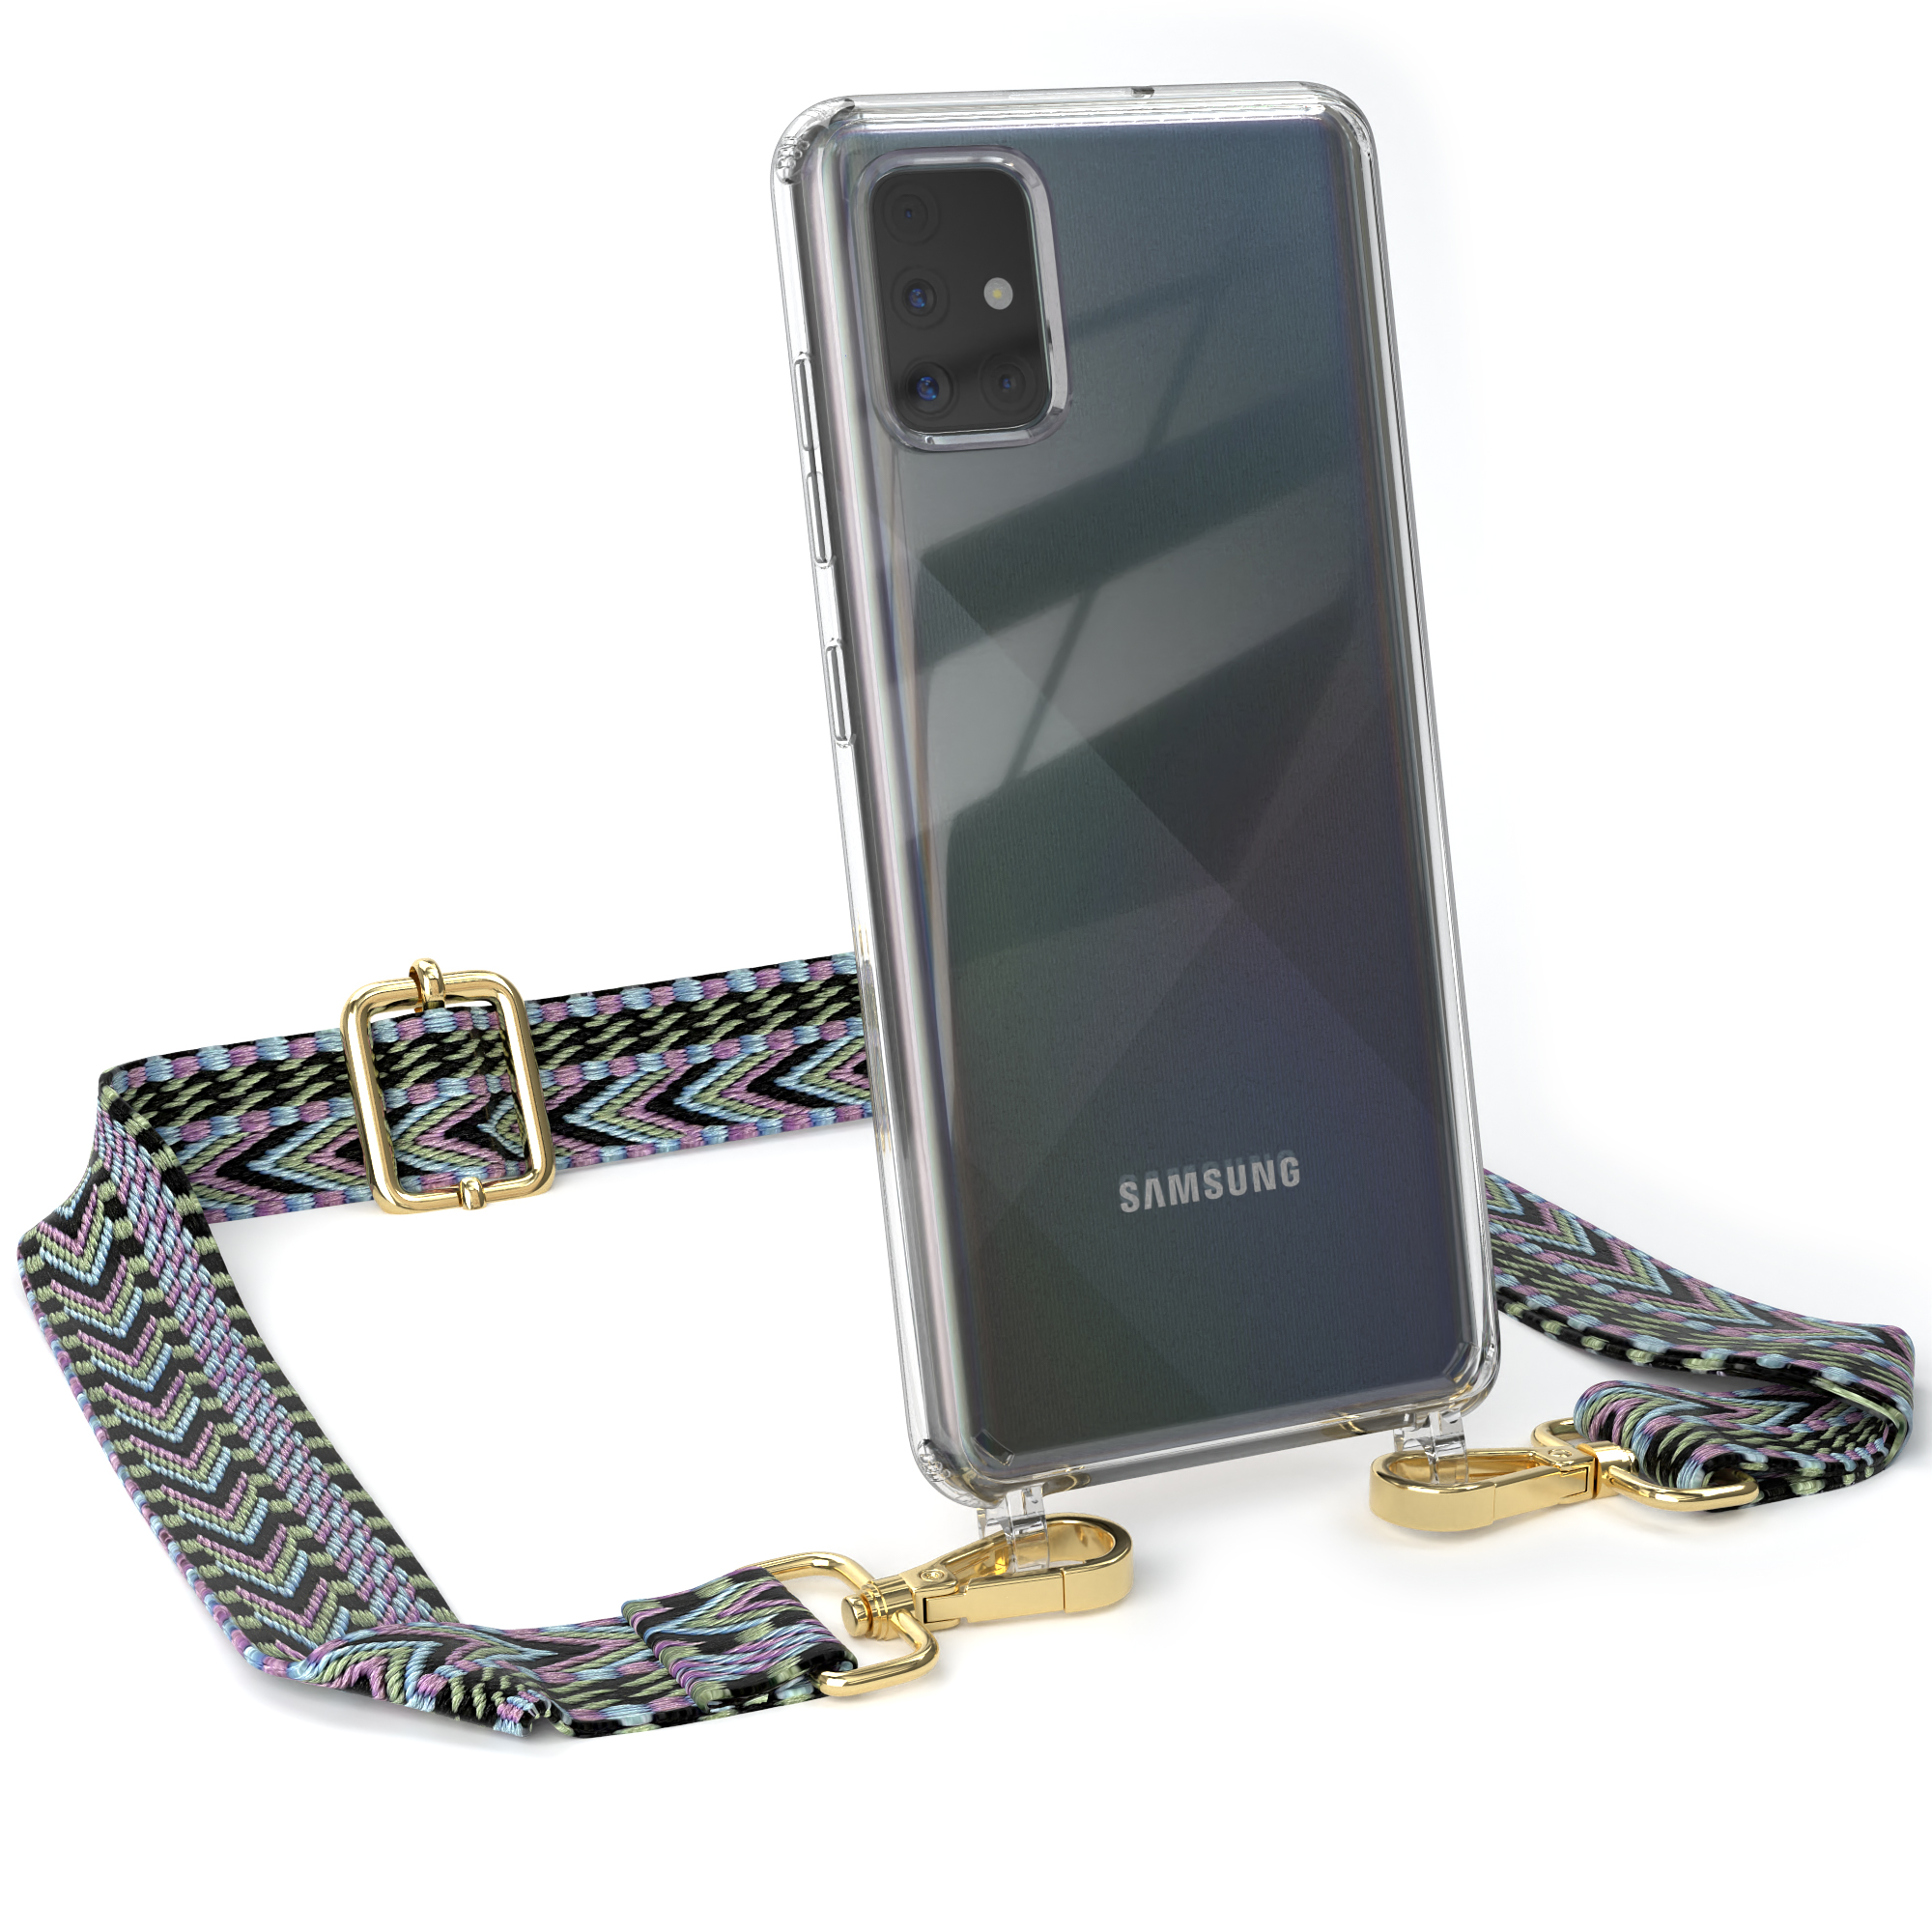 EAZY CASE Transparente Style, Handyhülle Violett Grün Kordel / A51, Galaxy mit Samsung, Boho Umhängetasche